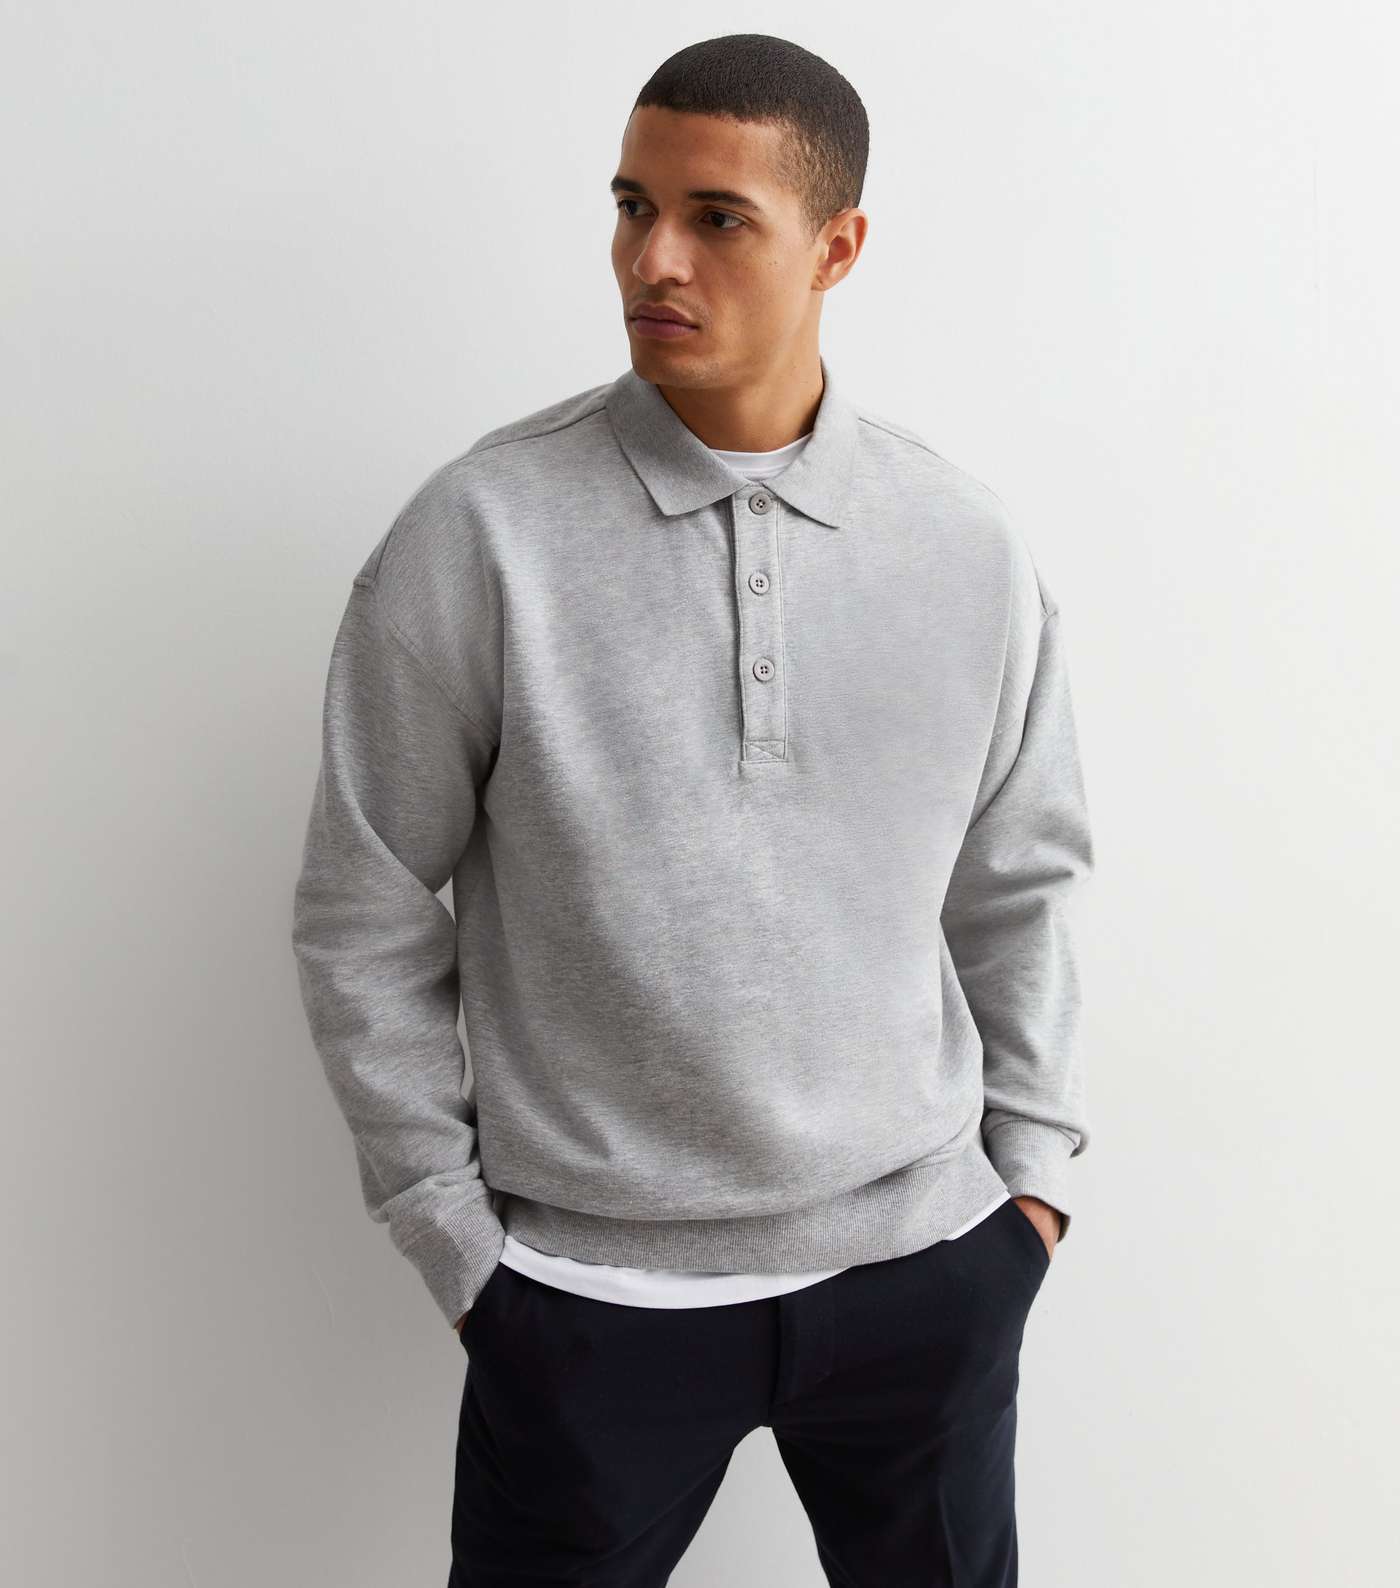 Grey Marl Jersey Polo Sweatshirt Image 2